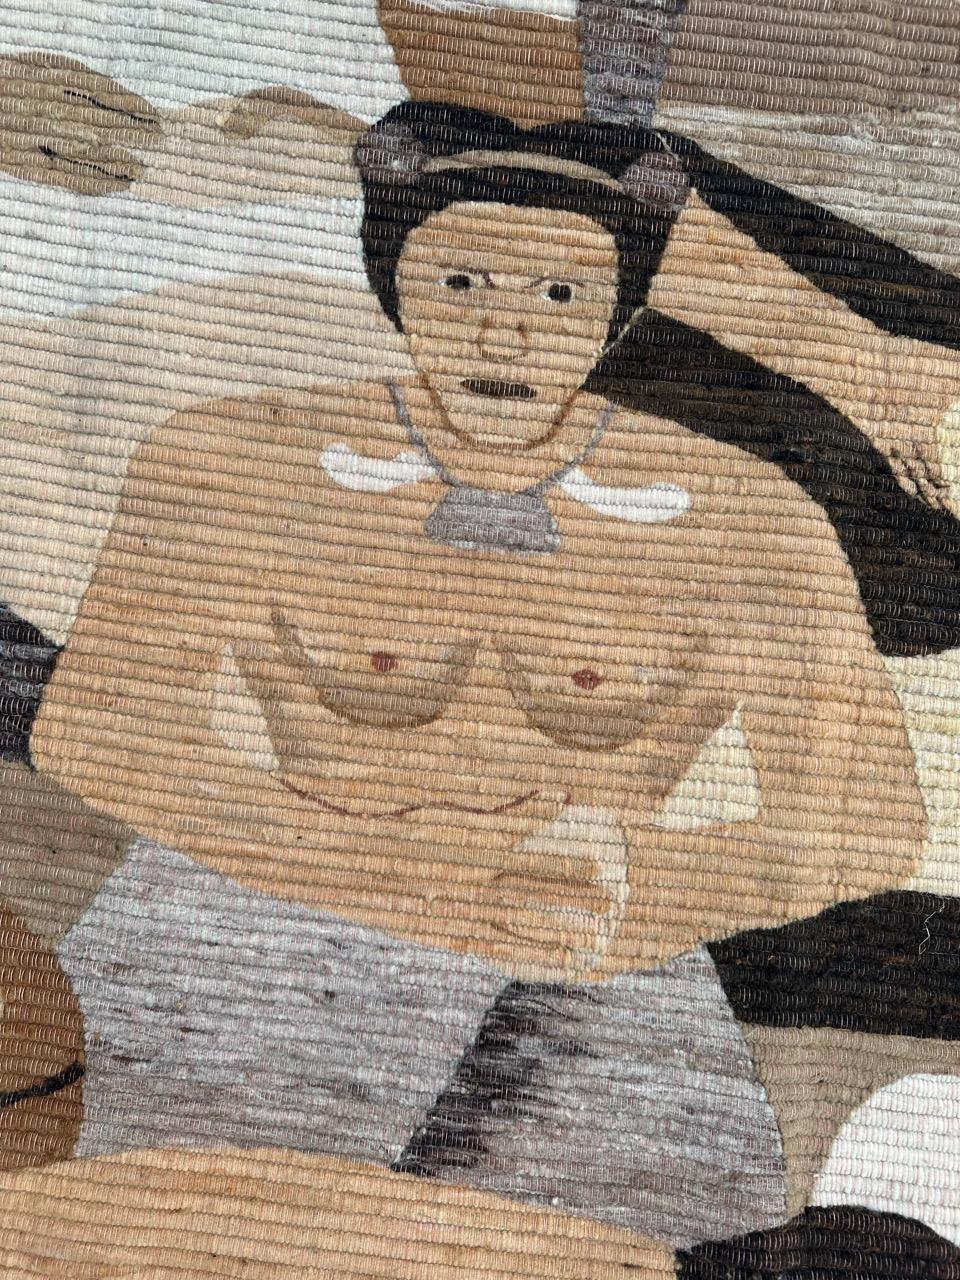 Entdecken Sie die Eleganz dieses handgewebten peruanischen Wandteppichs im Art-Déco-Stil, der das exquisite Design der im Dorf arbeitenden Frauen zeigt.
Unten ist ein Monogramm mit dem Namen des Künstlers zu sehen. ( G.P )
✨✨✨
